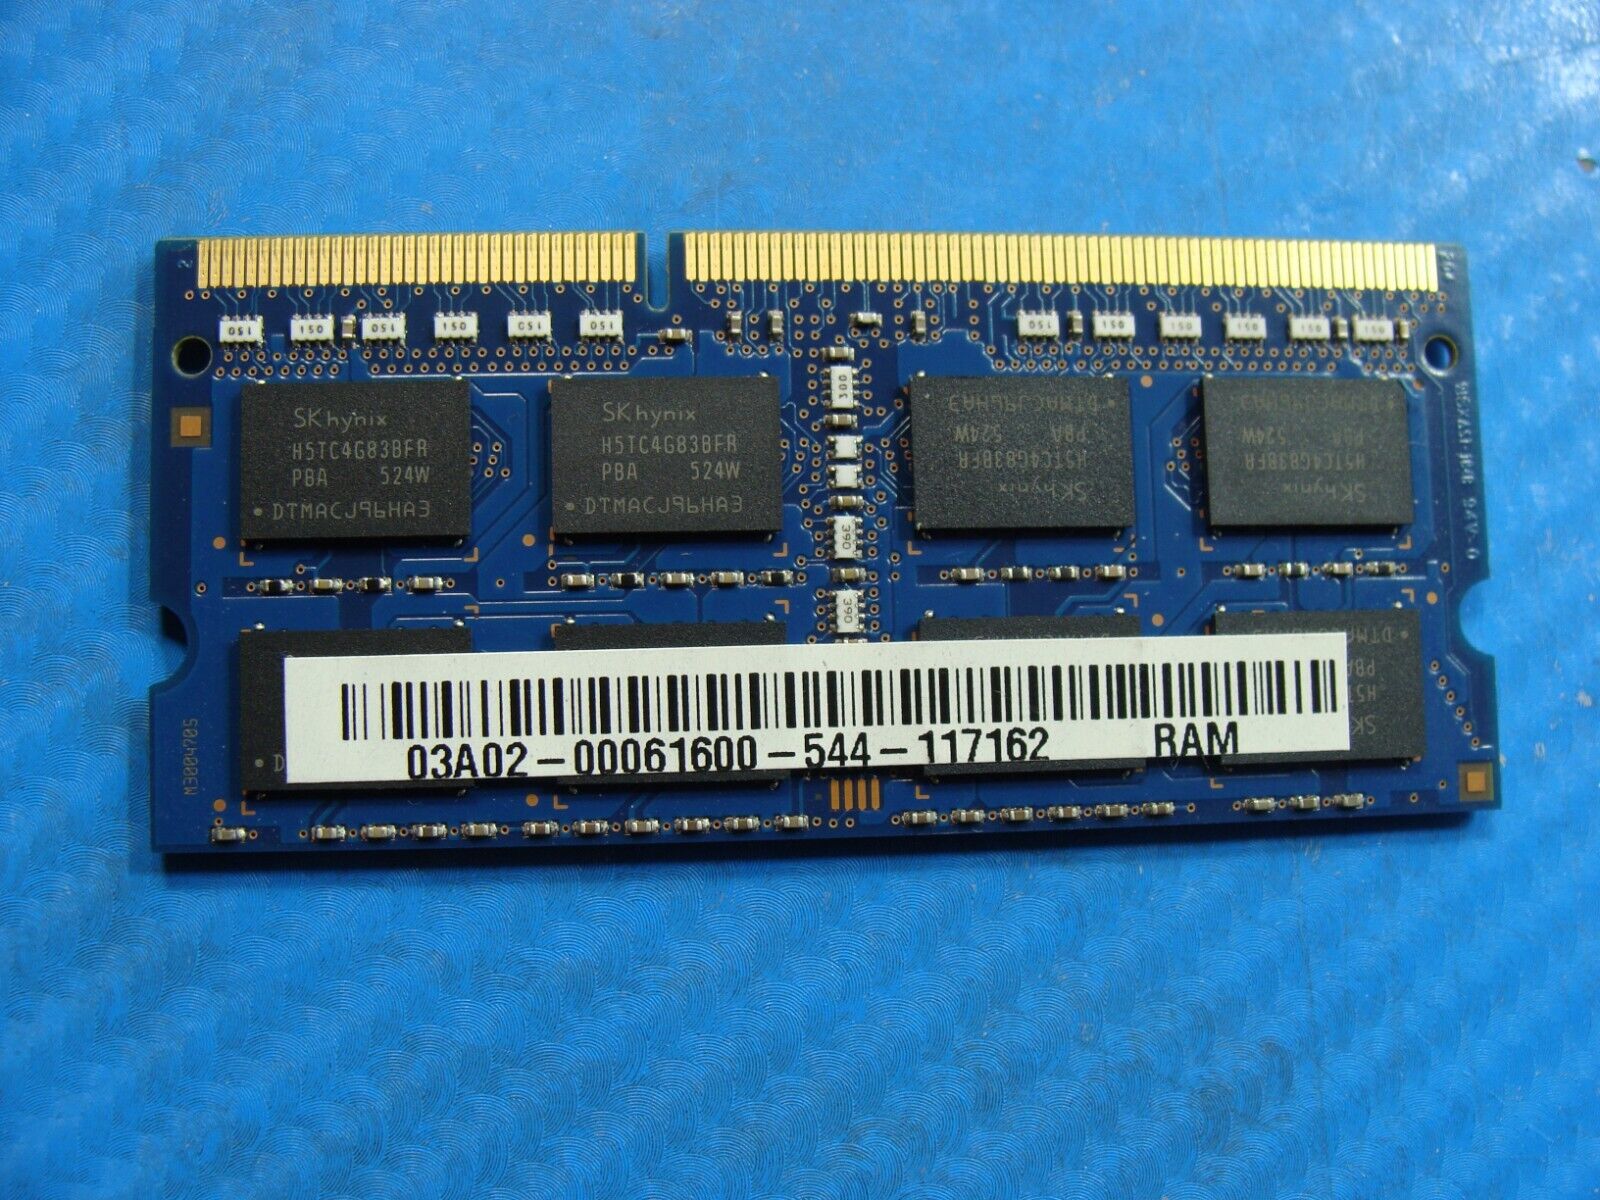 Asus GL551JW-WH71 SK Hynix 8GB PC3L-12800S Memory RAM SO-DIMM HMT41GS6BFR8A-PB